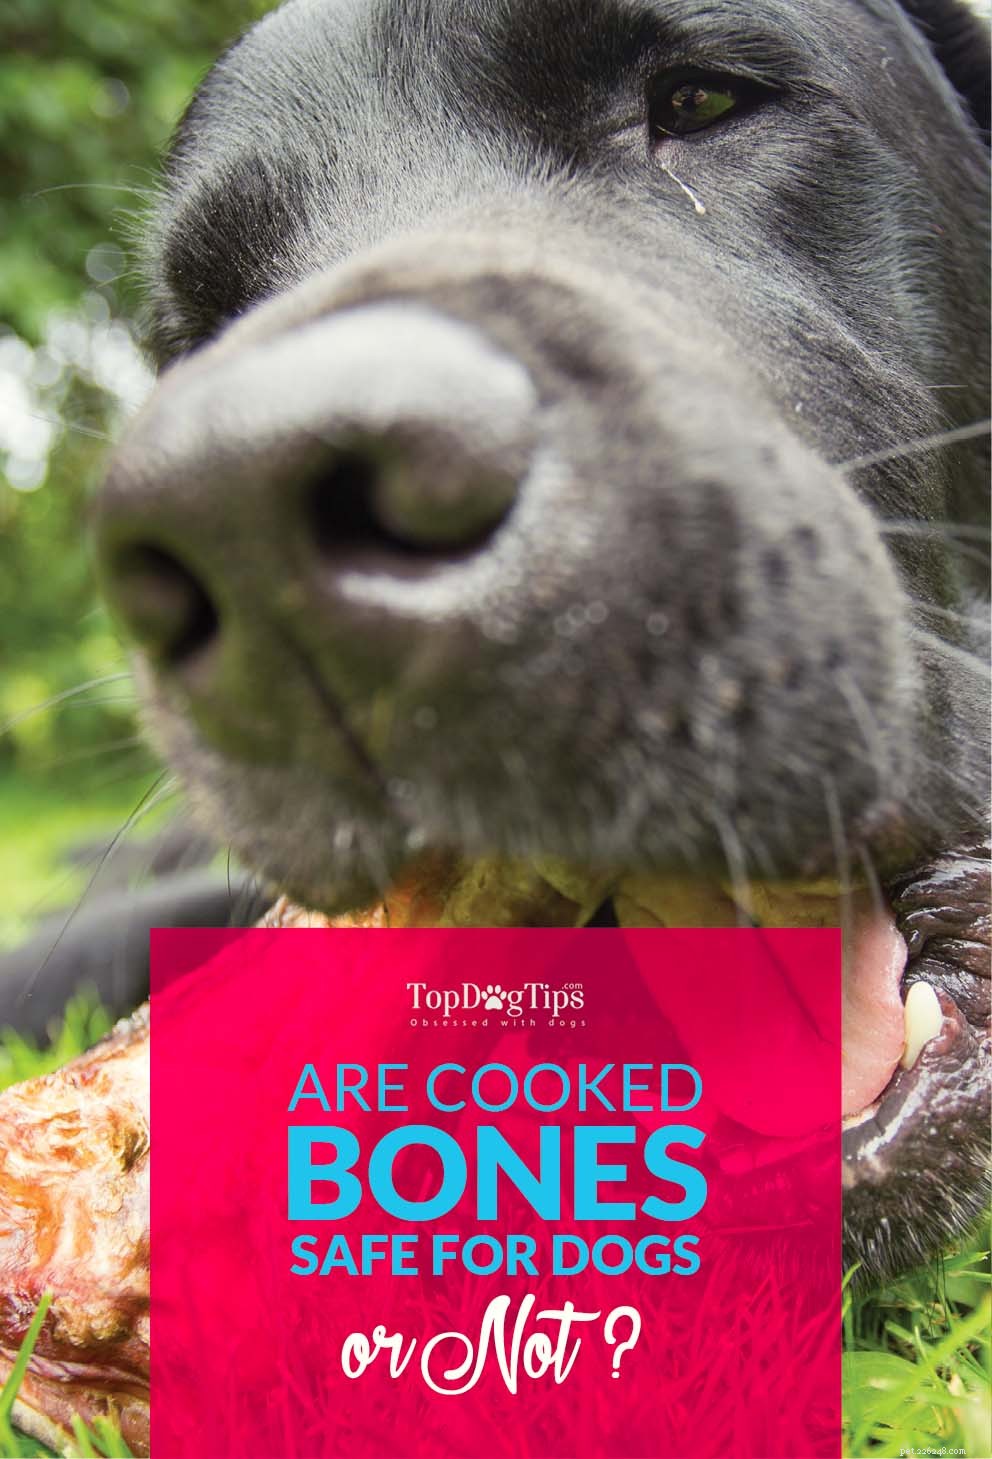 Gekookte botten voor honden is misschien geen goed idee